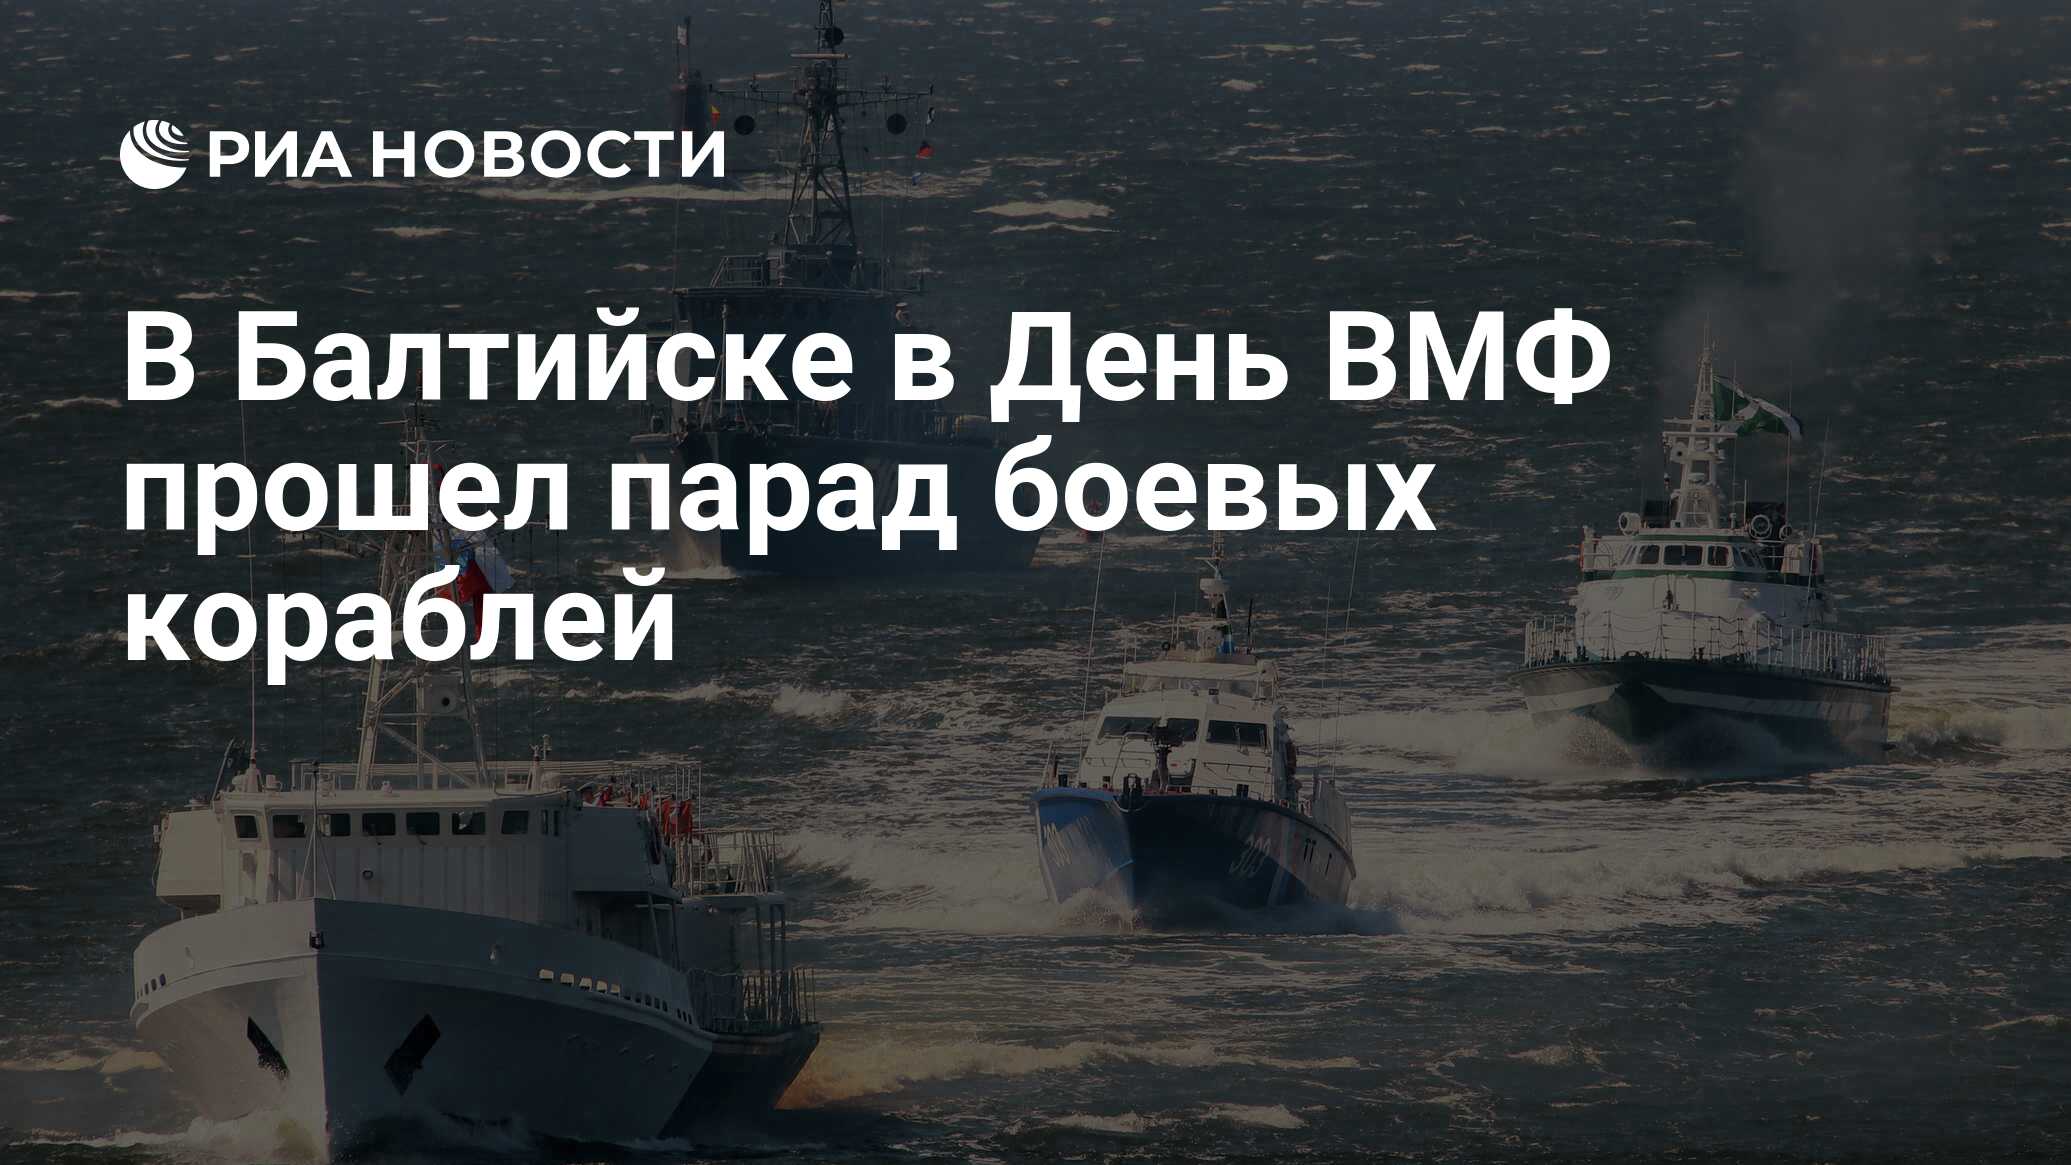 С днём военно морского флота России